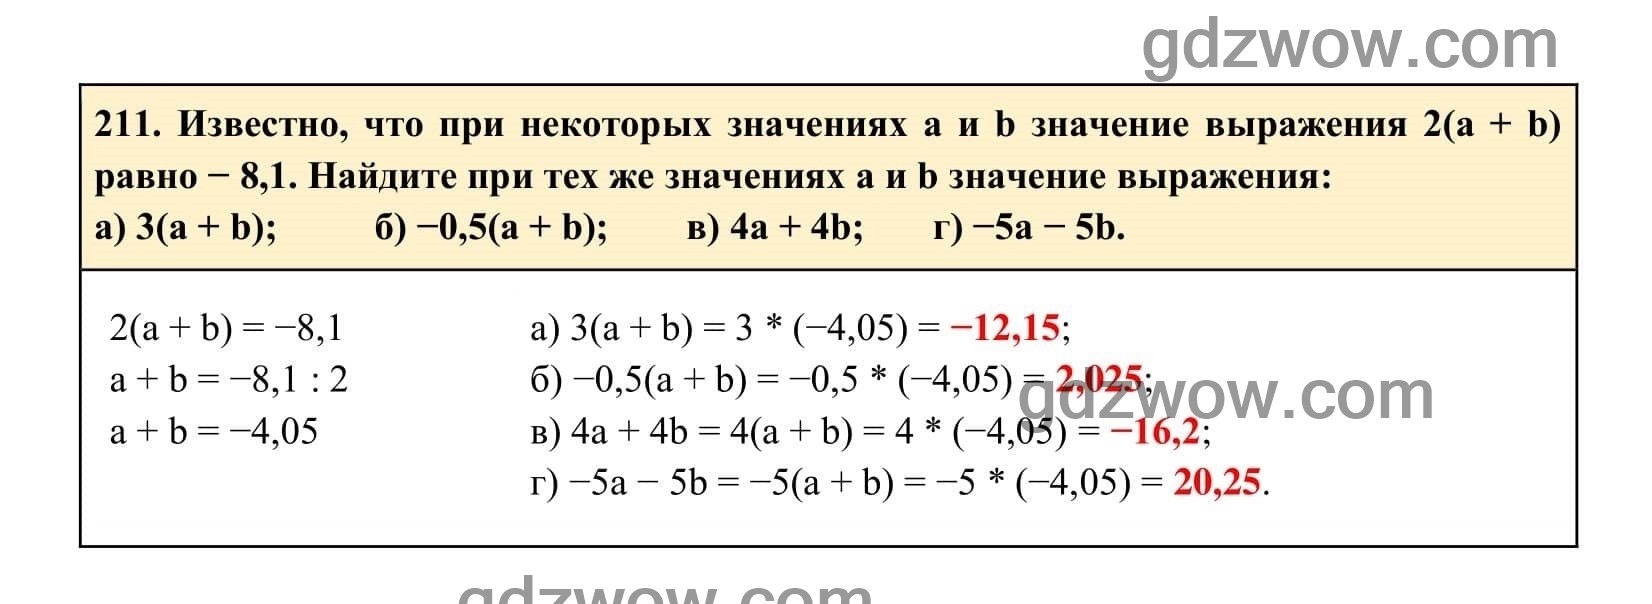 Упражнение 211 - ГДЗ по Алгебре 7 класс Учебник Макарычев (решебник) - GDZwow